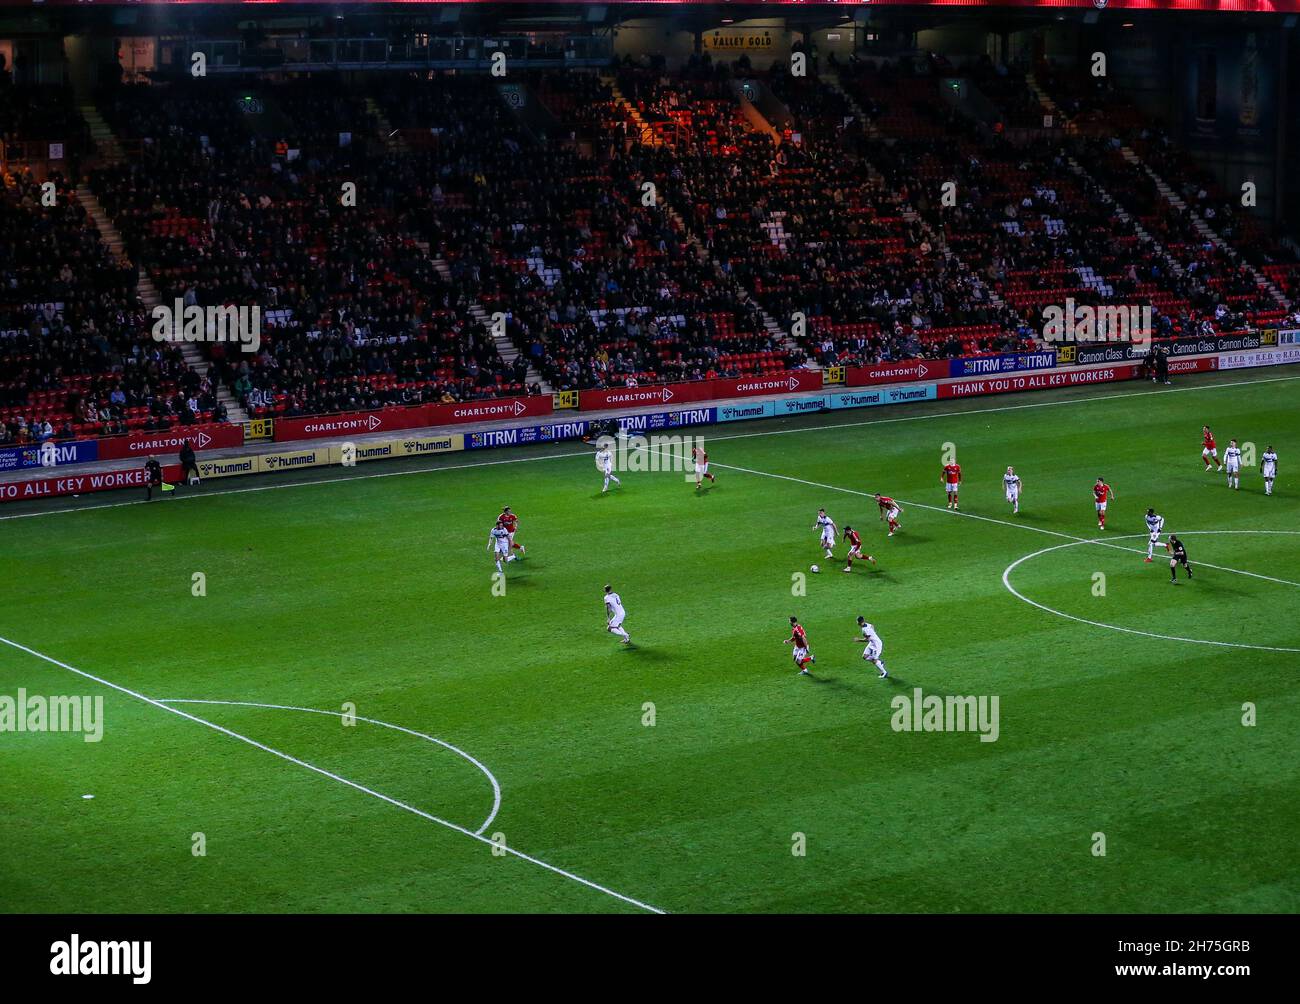 Allgemeiner Blick auf die Action während des Spiels während der Sky Bet League One im The Valley, London. Bilddatum: Samstag, 20. November 2021. Stockfoto